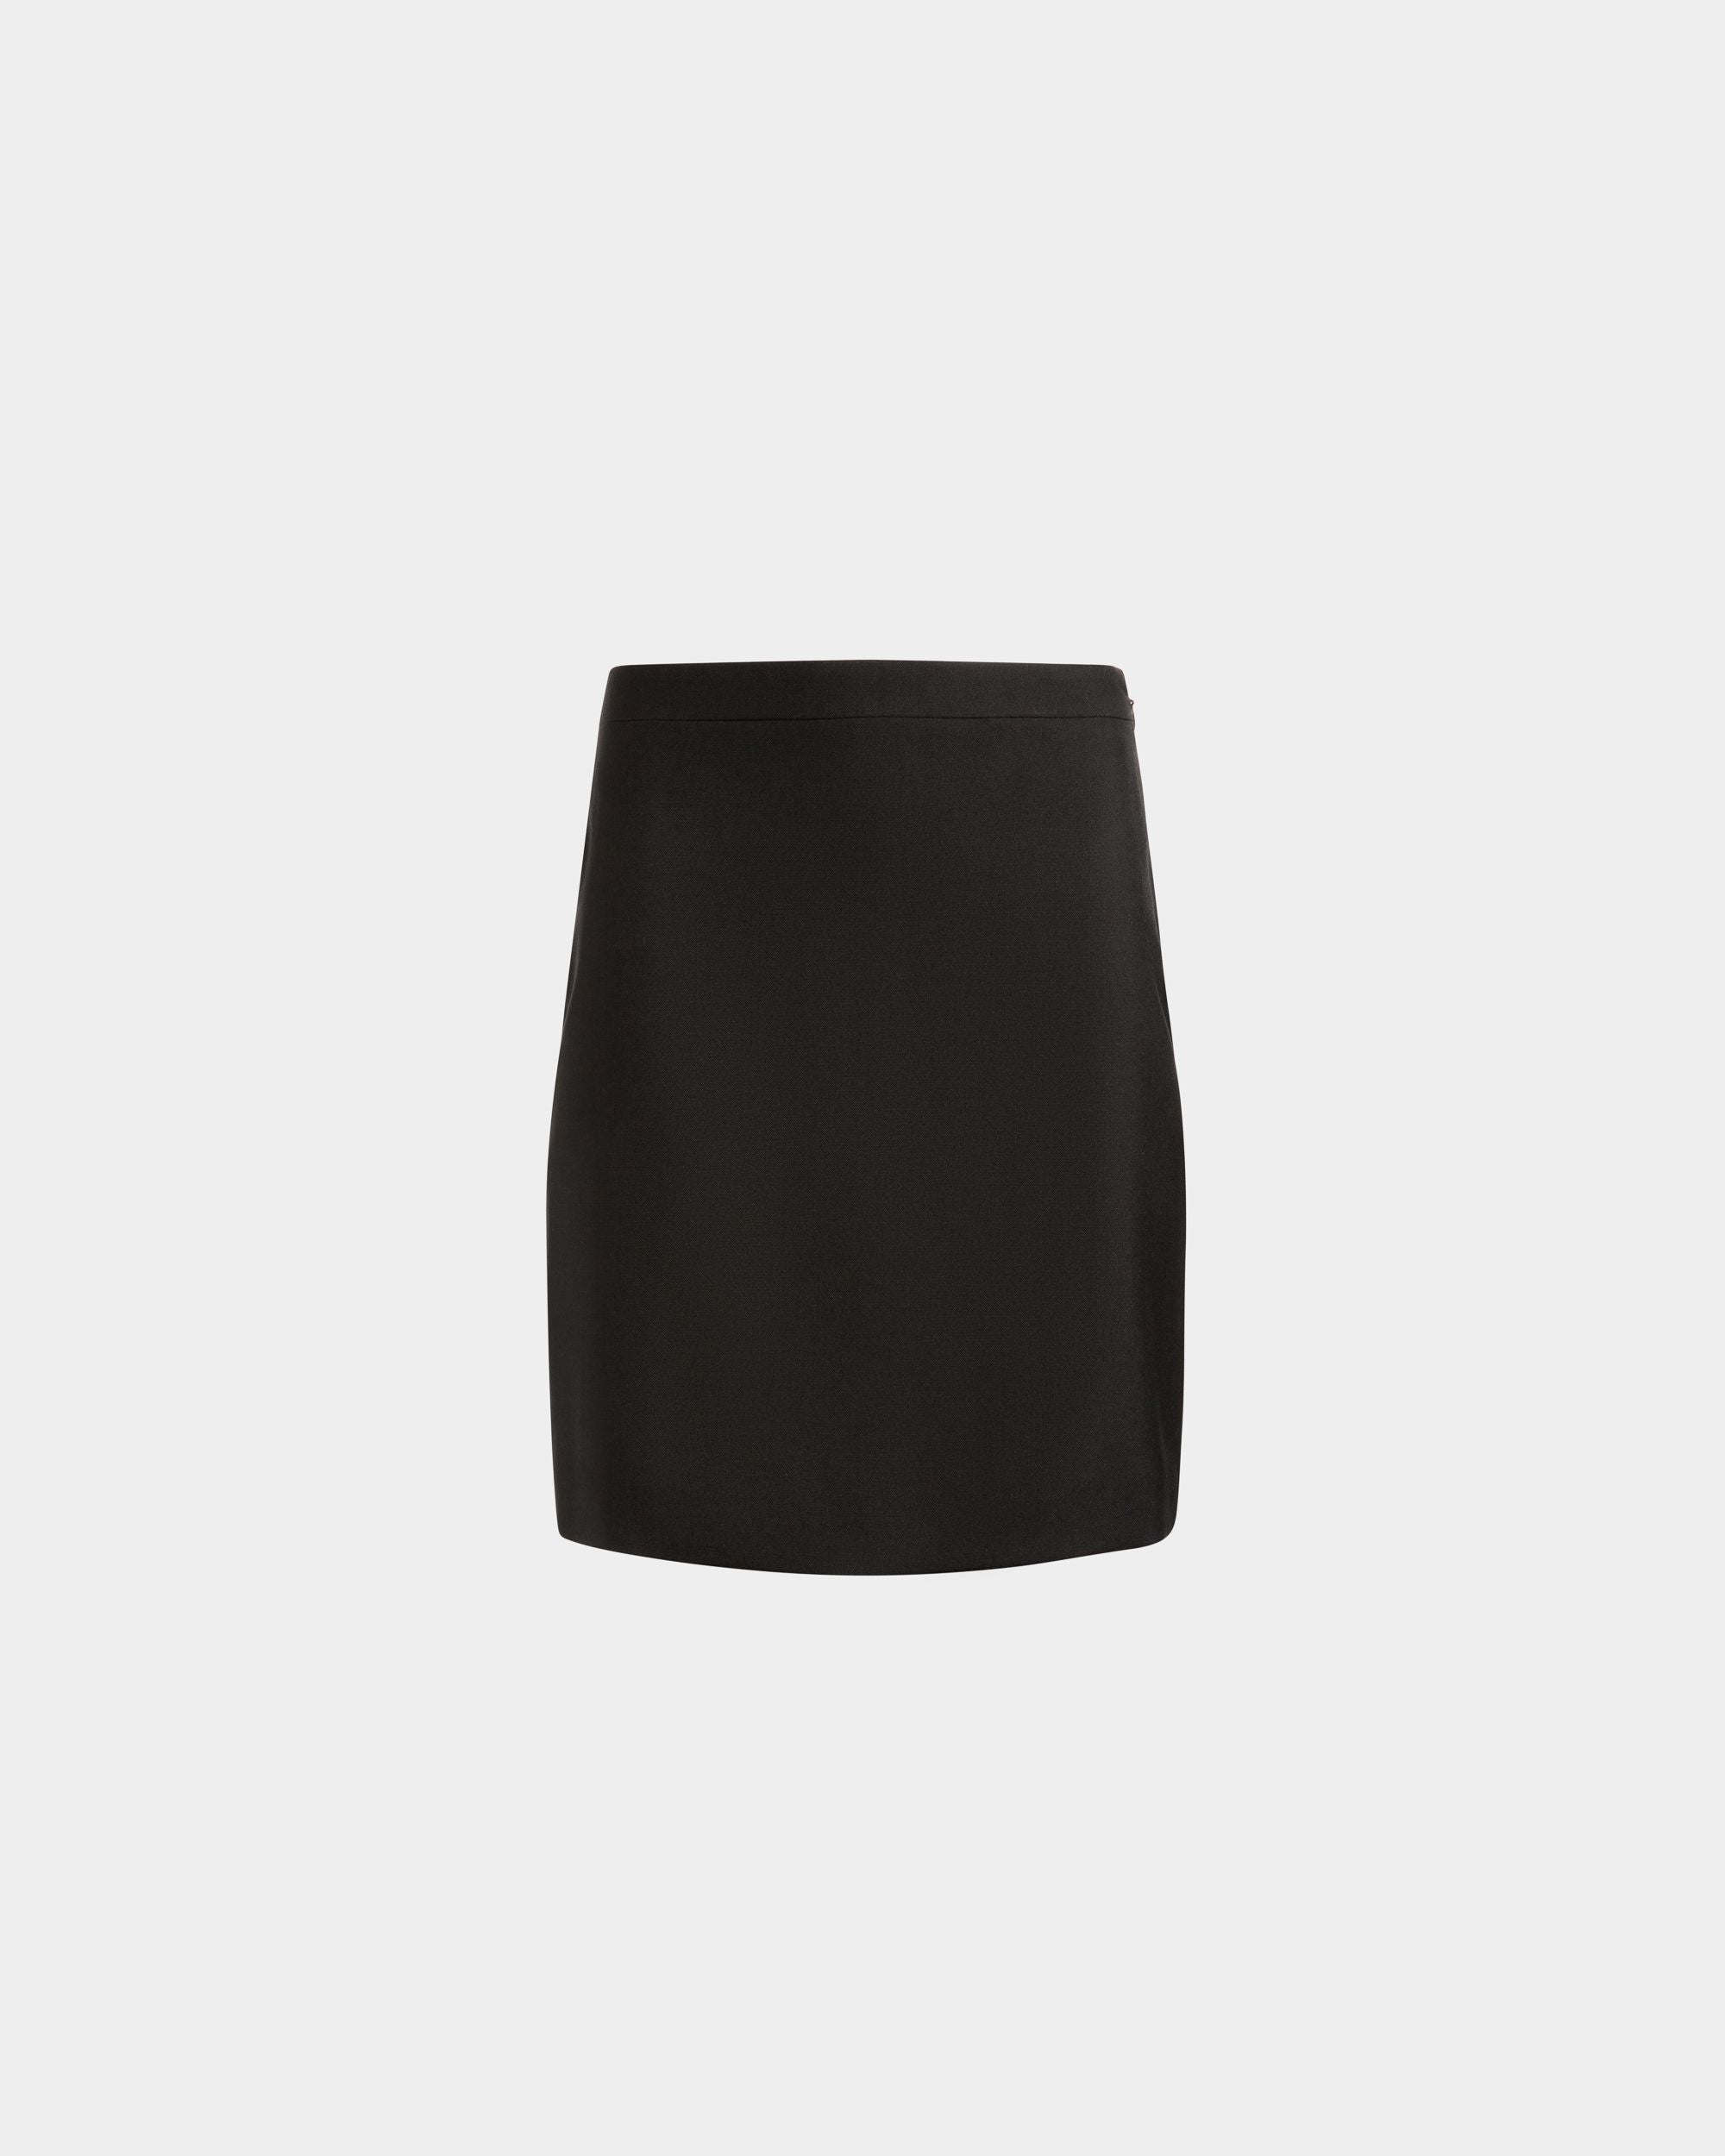 Women's Mini Skirt in Black Wool | Bally | Still Life Front